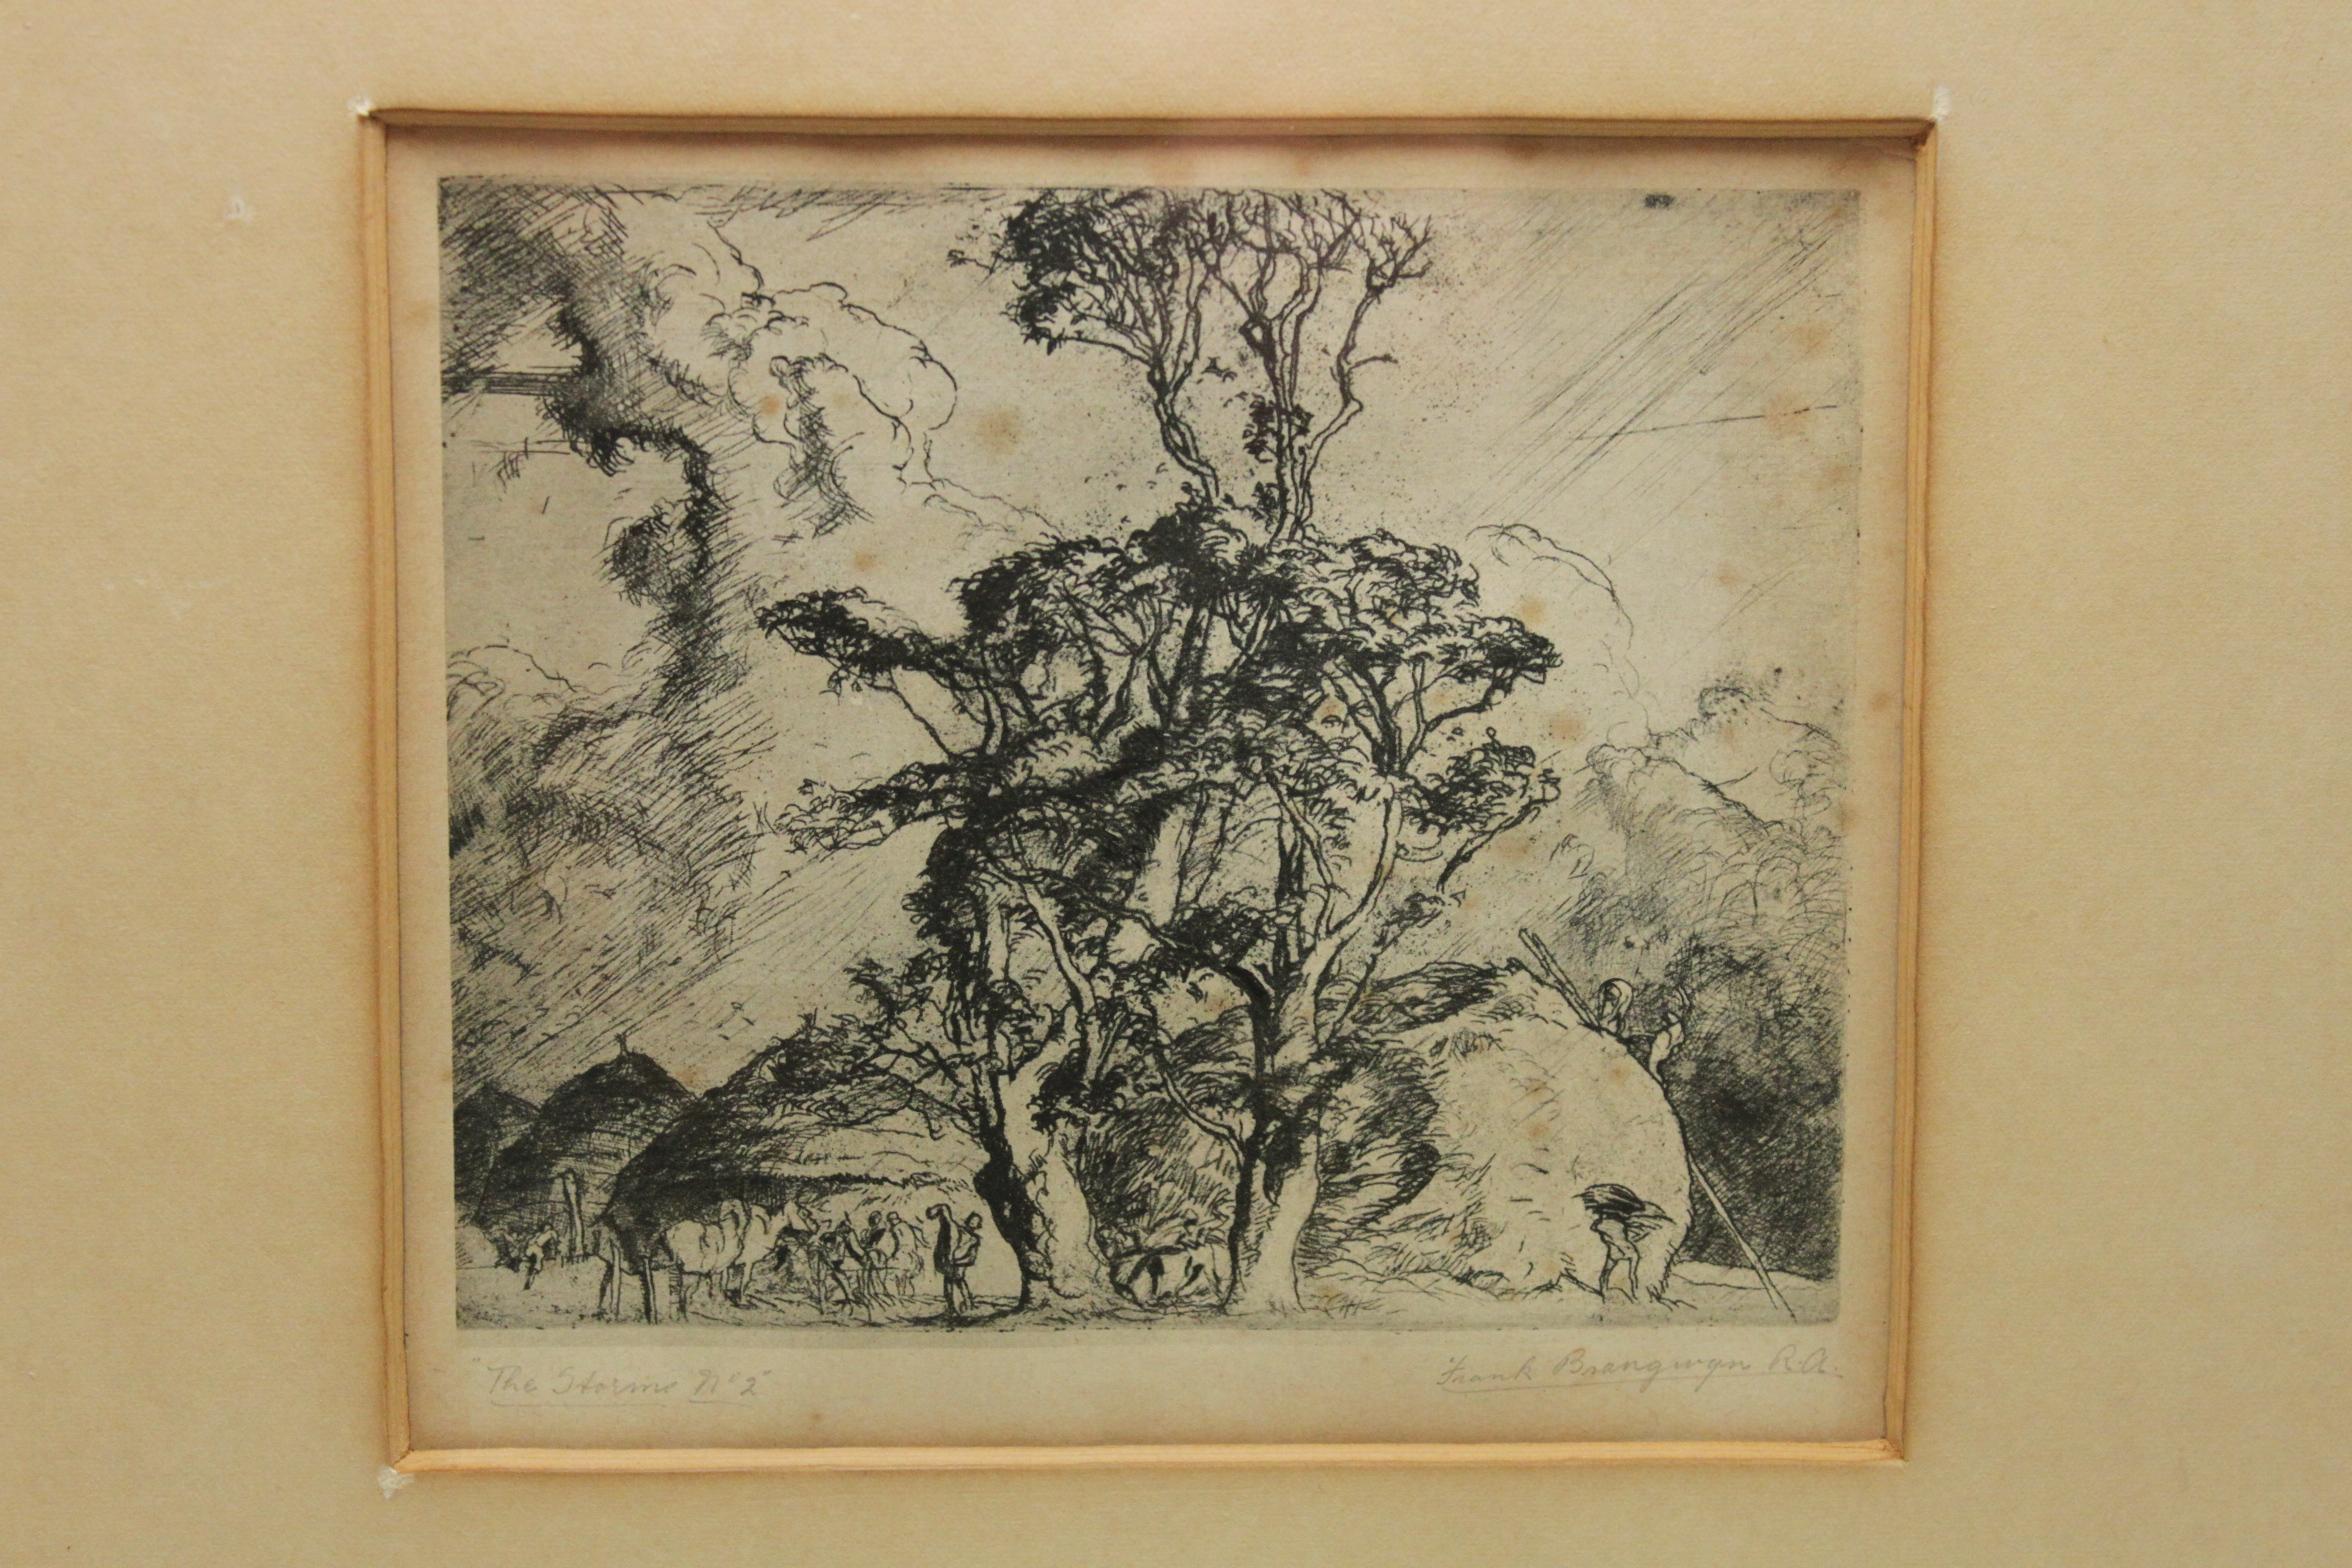 En bas à gauche de cette gravure de Frank Brangwyn (1867-1956) figure le titre, écrit au crayon, 